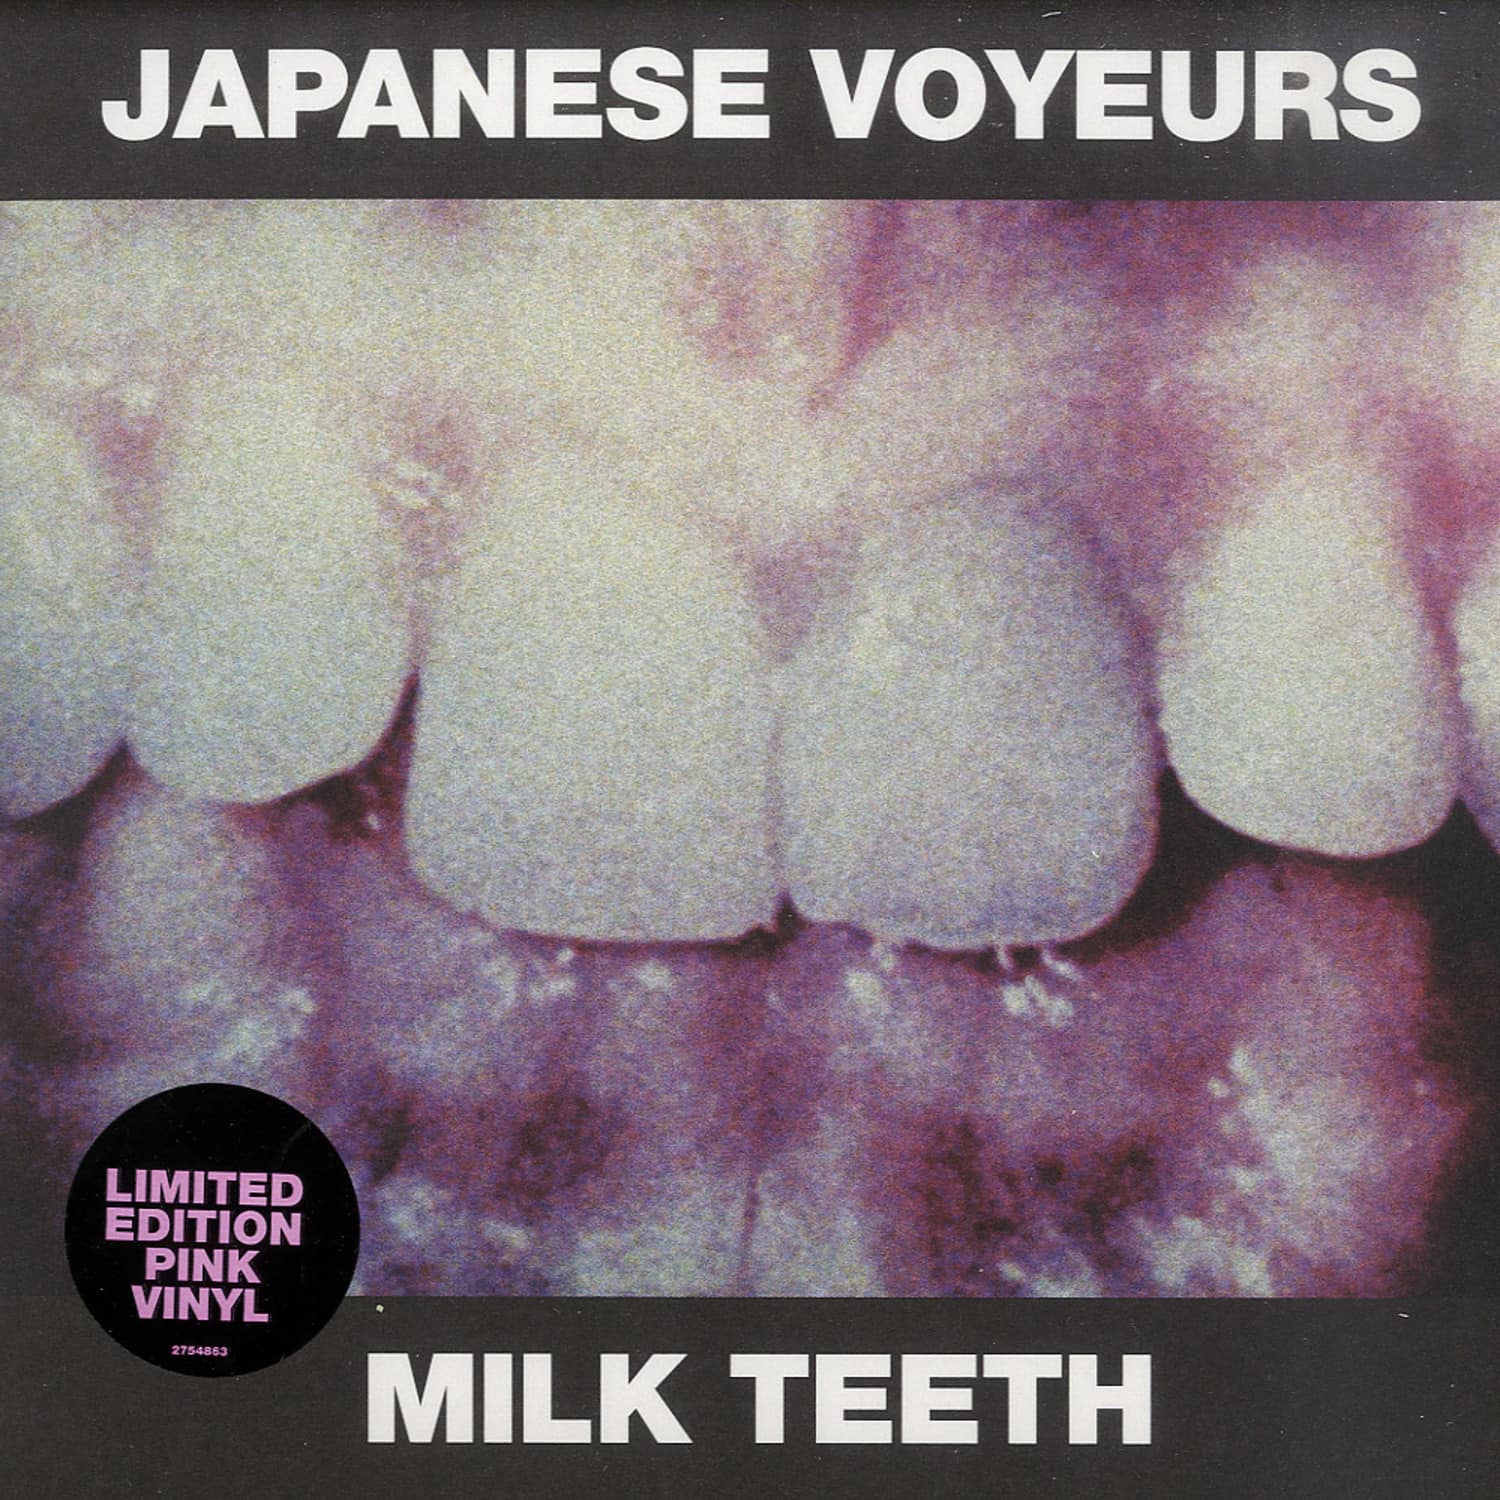 Japanese Voyeurs - MILK TEETH 